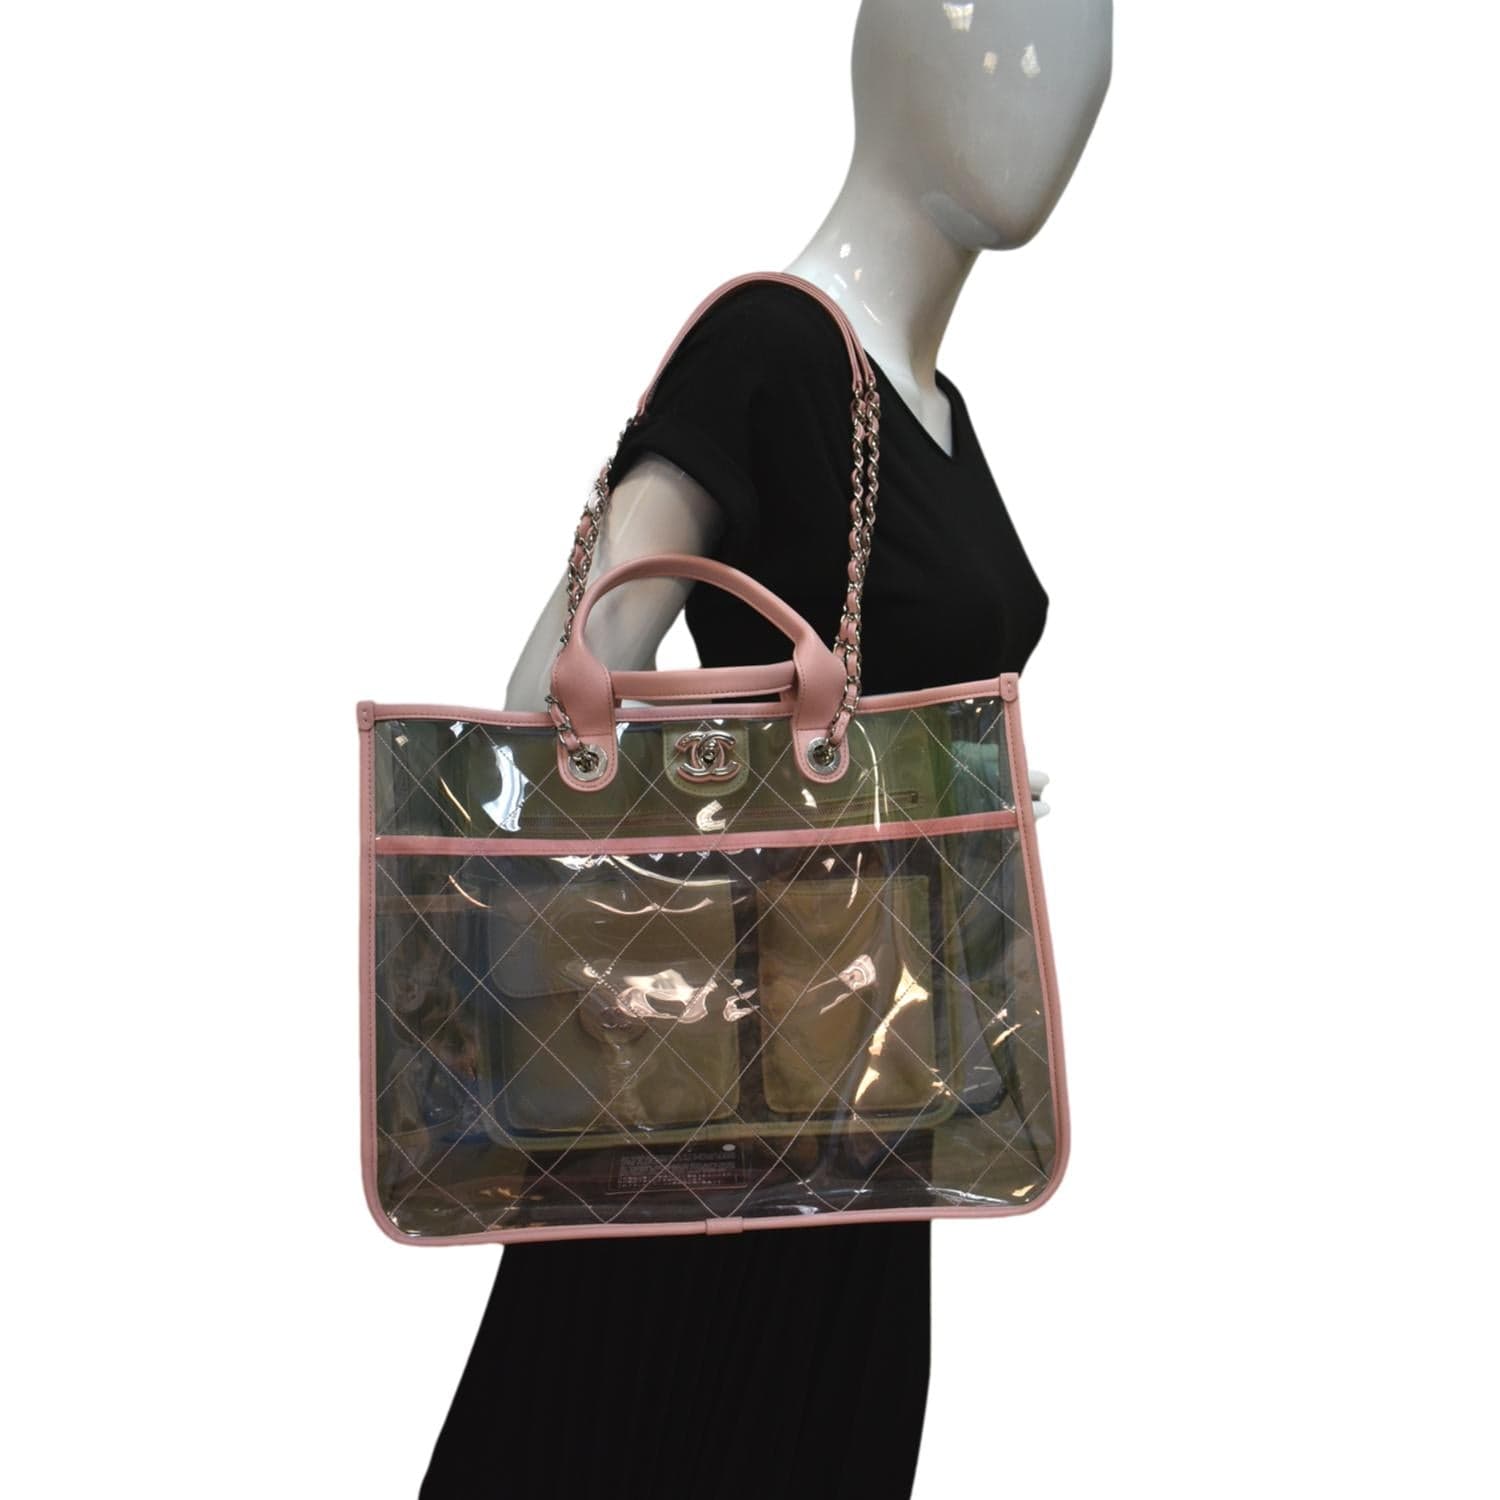 used coco chanel handbags